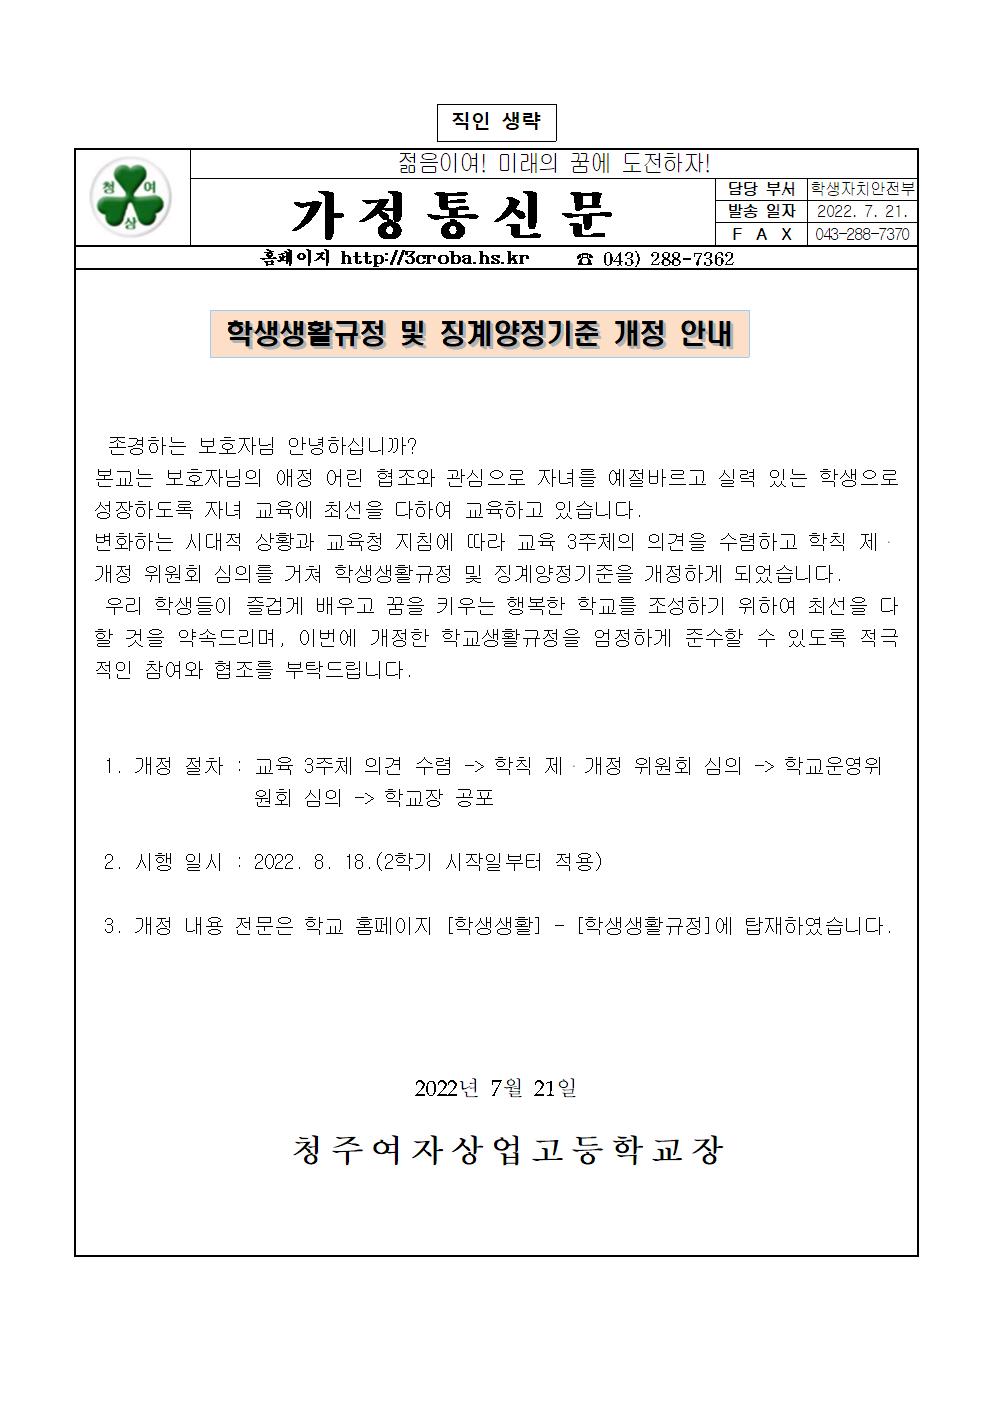 2022. 학생생활규정 및 징계양정기준 개정 안내(가정통신문)(1)001